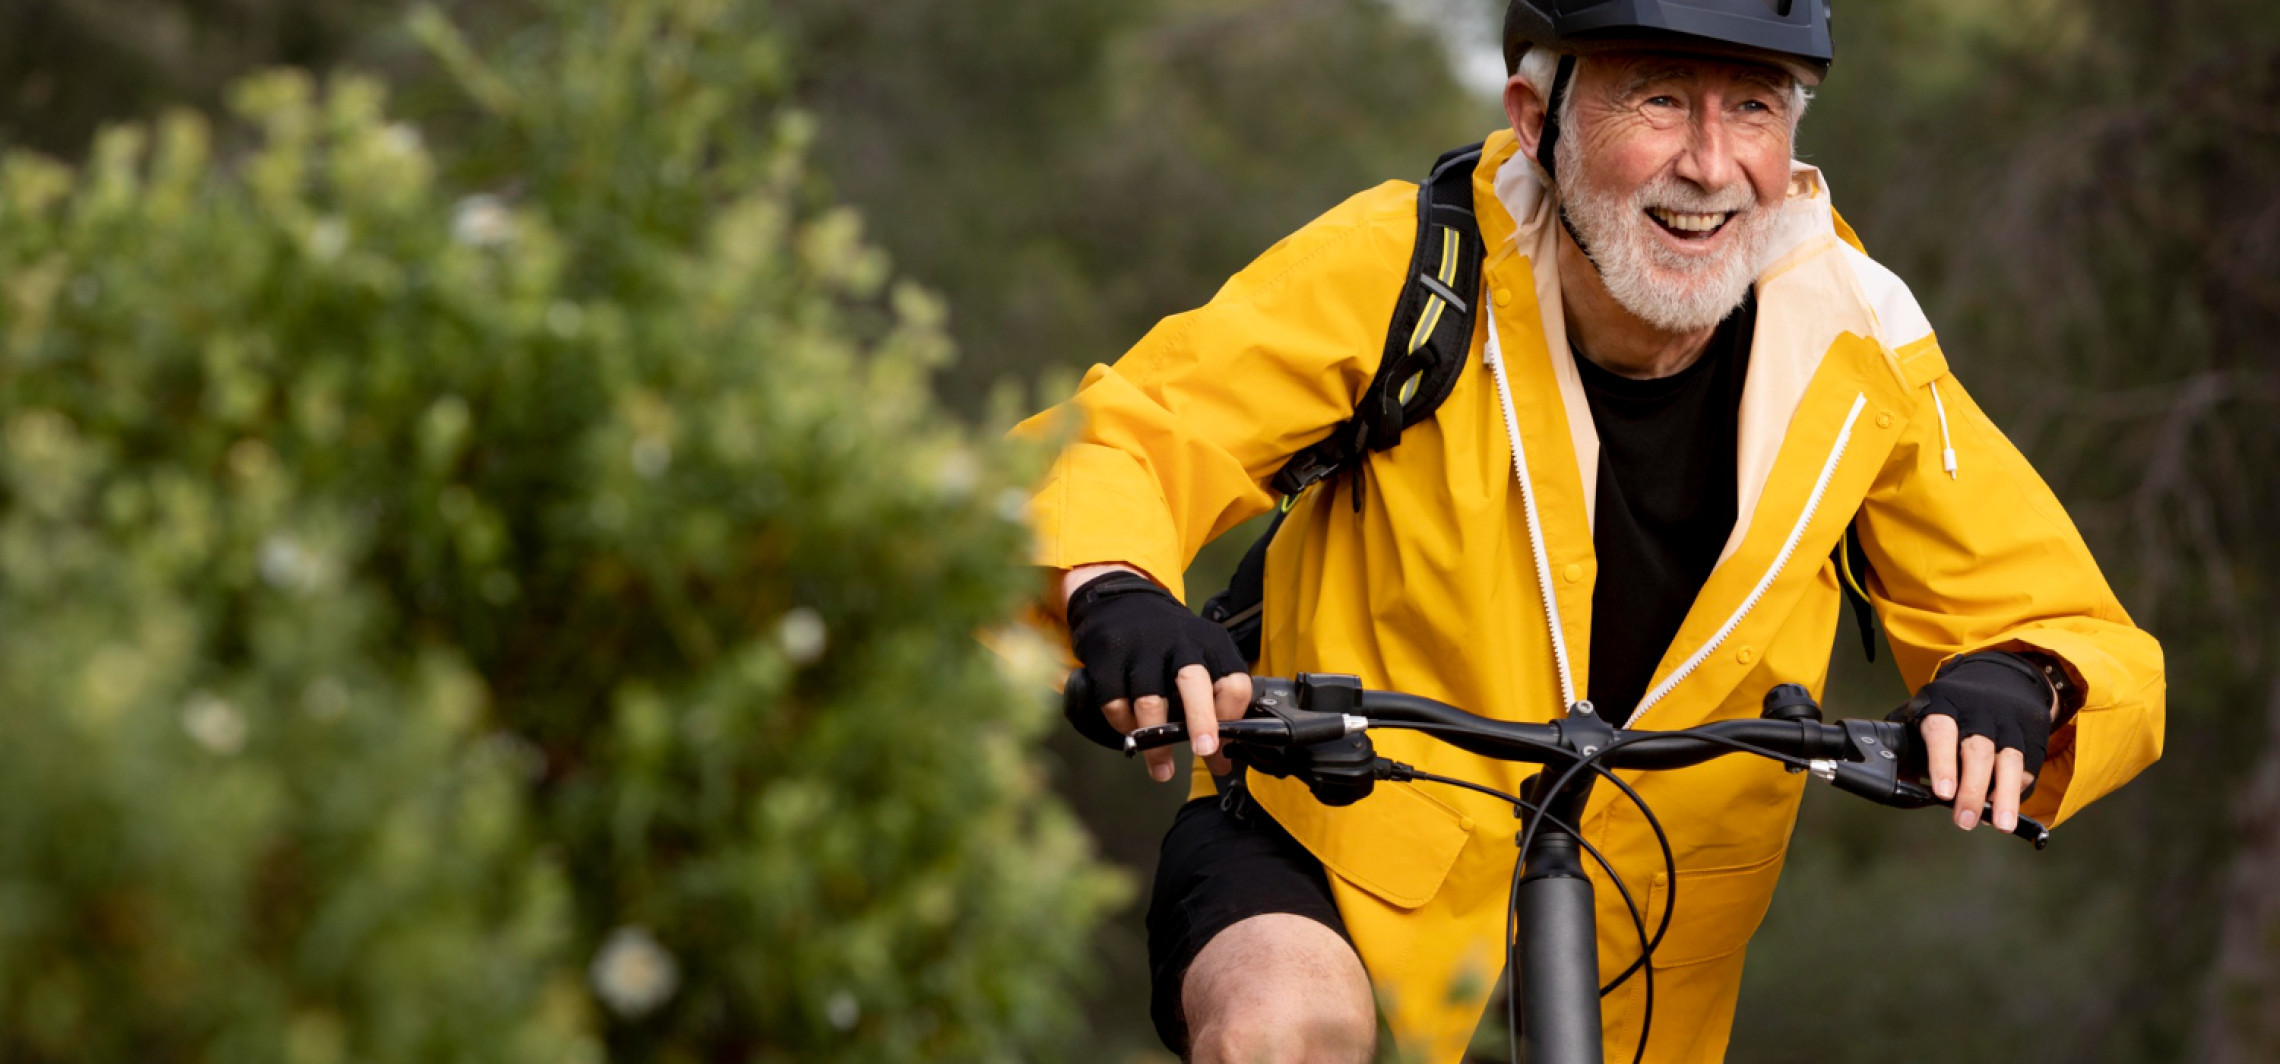 Region - Jak wybrać rower elektryczny dla seniora?